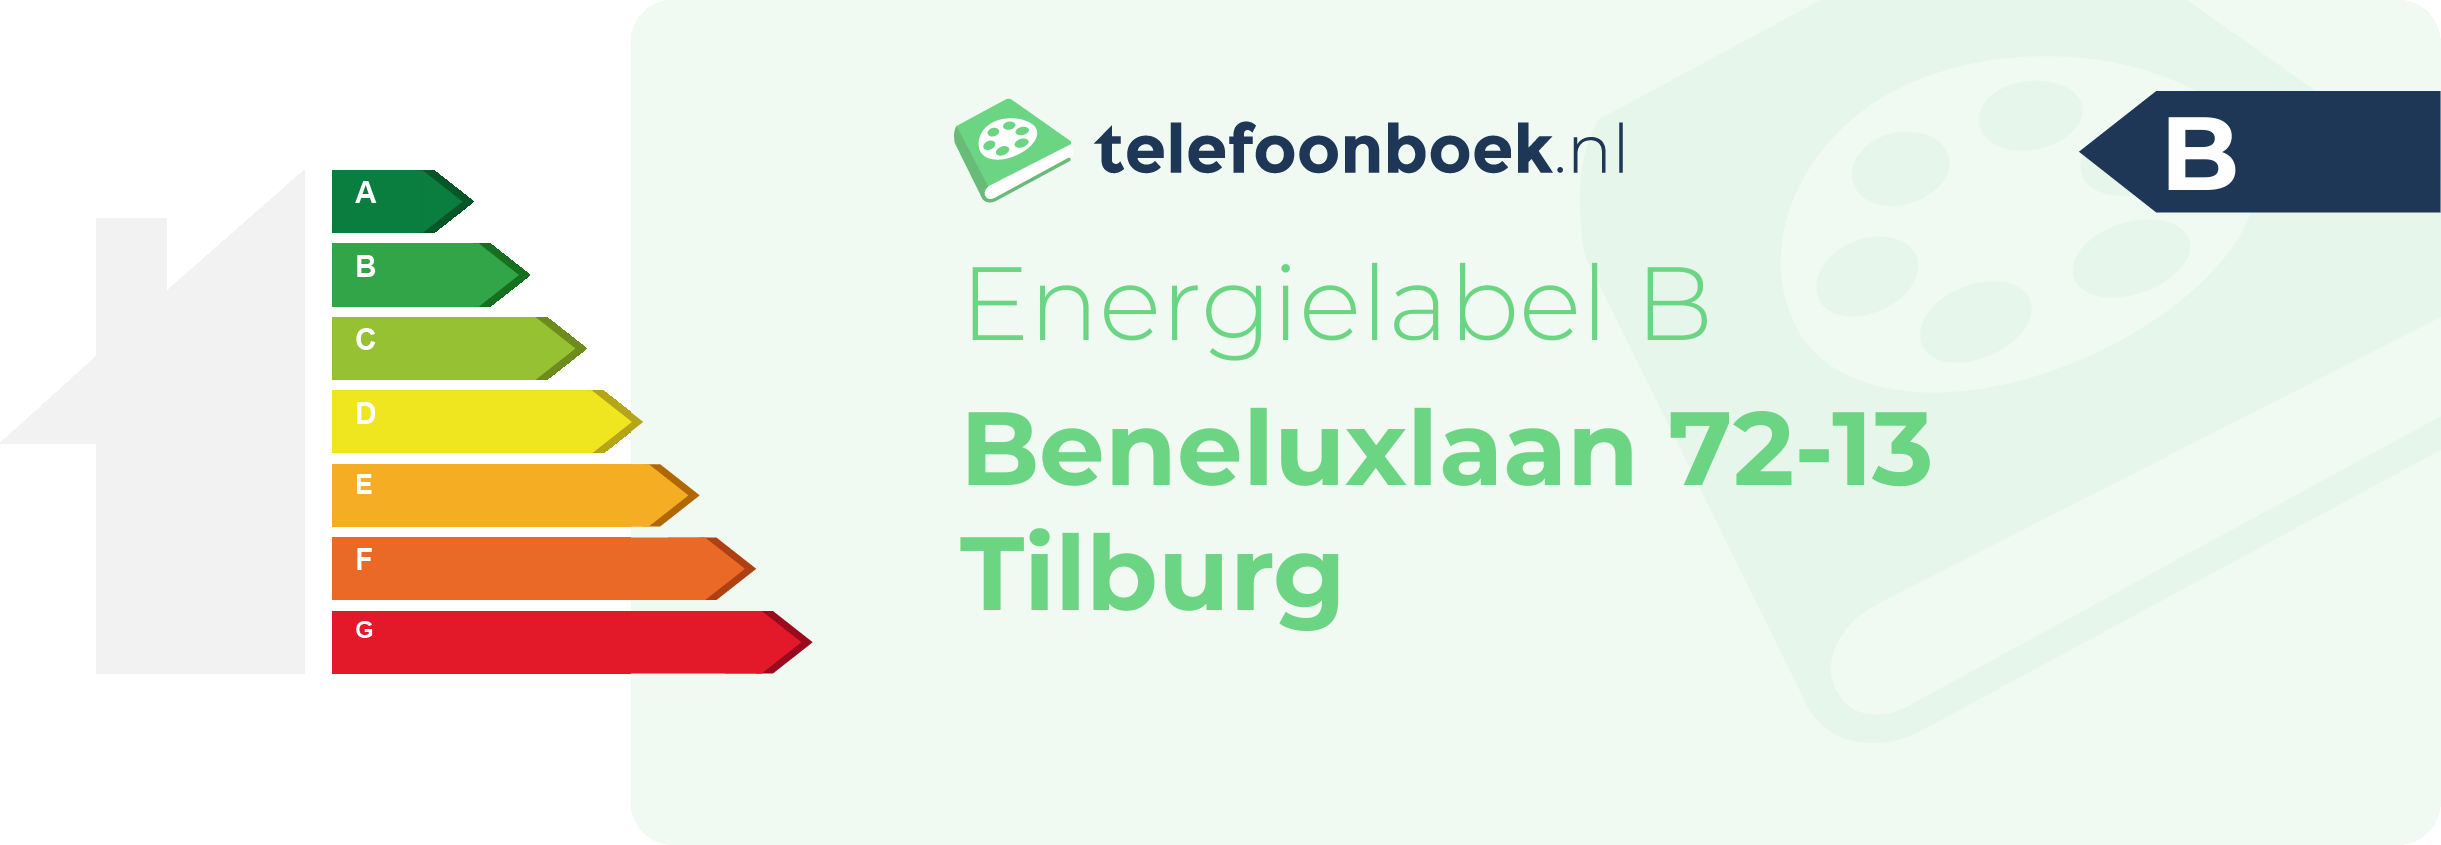 Energielabel Beneluxlaan 72-13 Tilburg